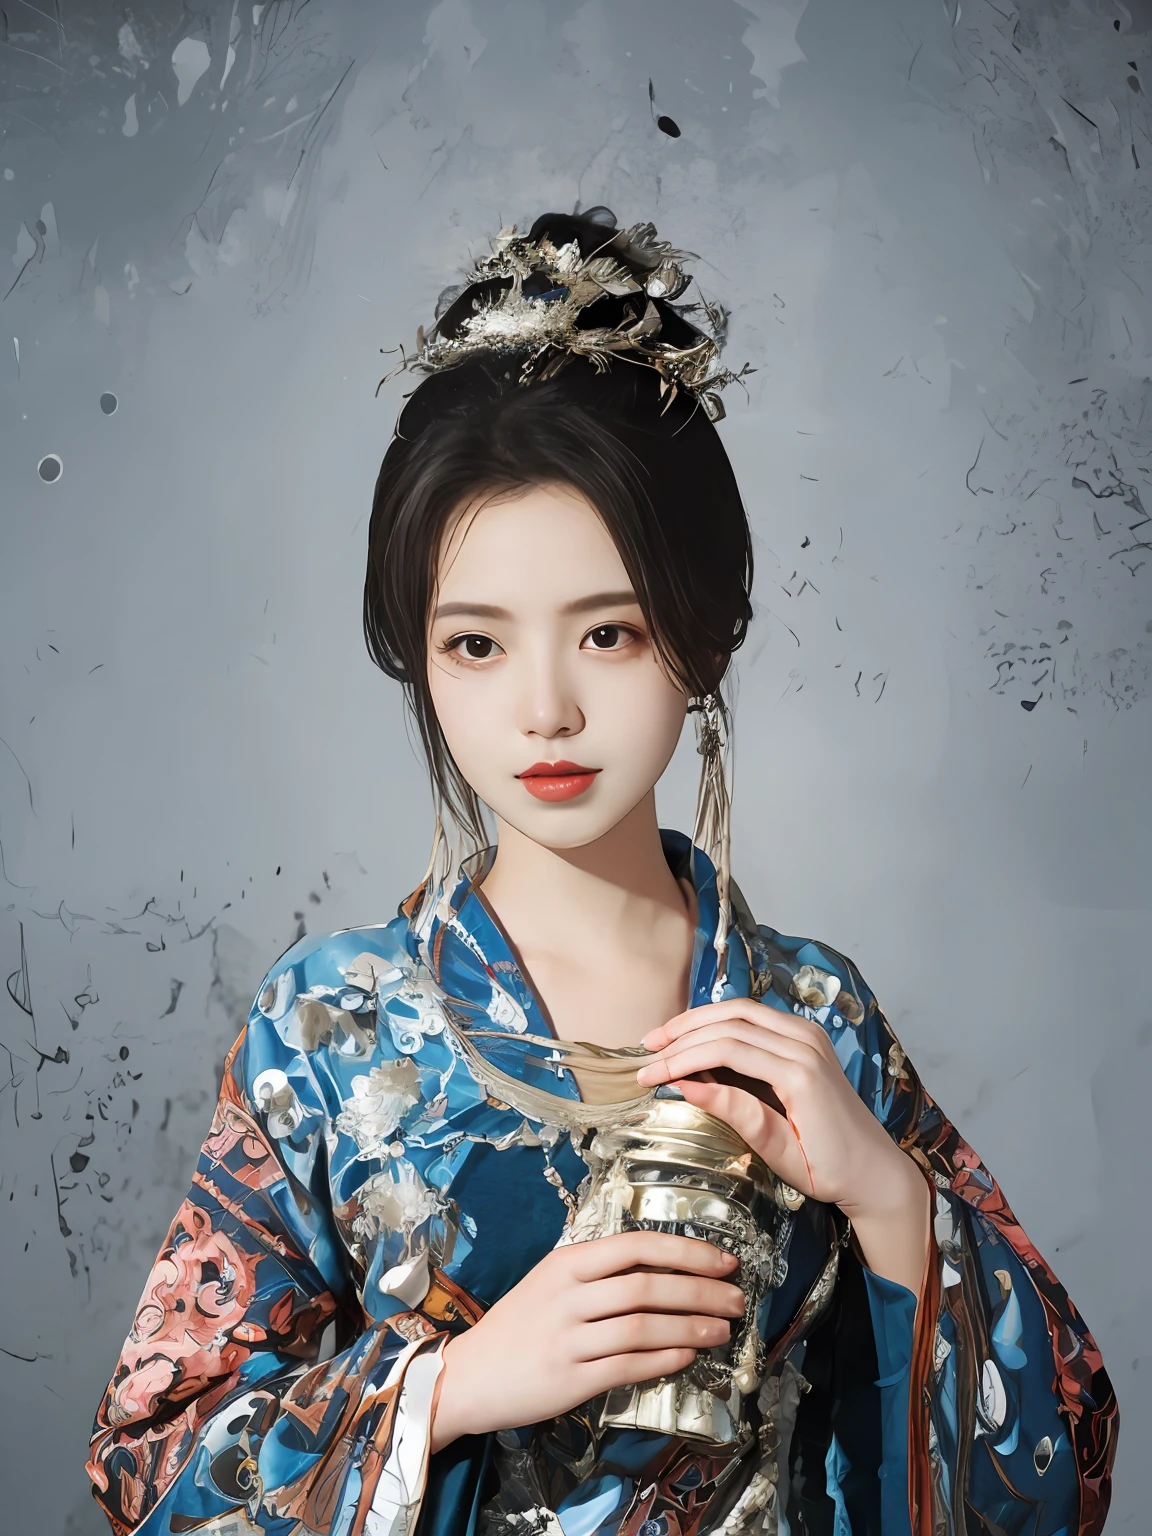 一個穿著中國傳統服裝的女人的插圖, 動漫美學風格, 32k 超高清, 眨眼就錯過的細節, 美麗的, 受動漫啟發的角色, 米色和海藍寶石色, 特寫,